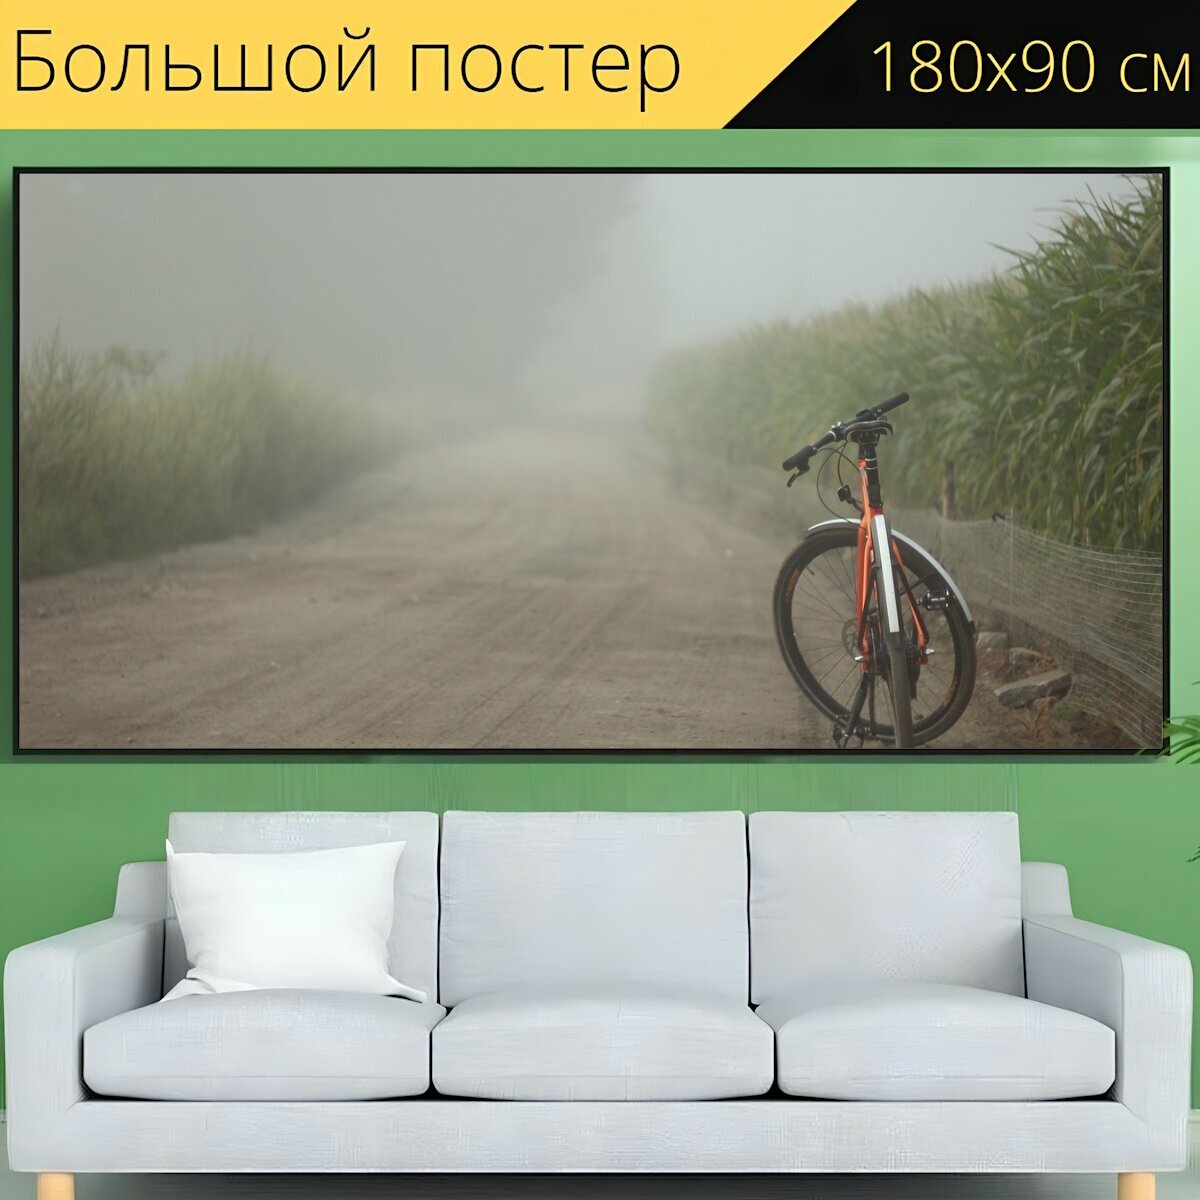 Большой постер "Велосипед, поле, туман" 180 x 90 см. для интерьера